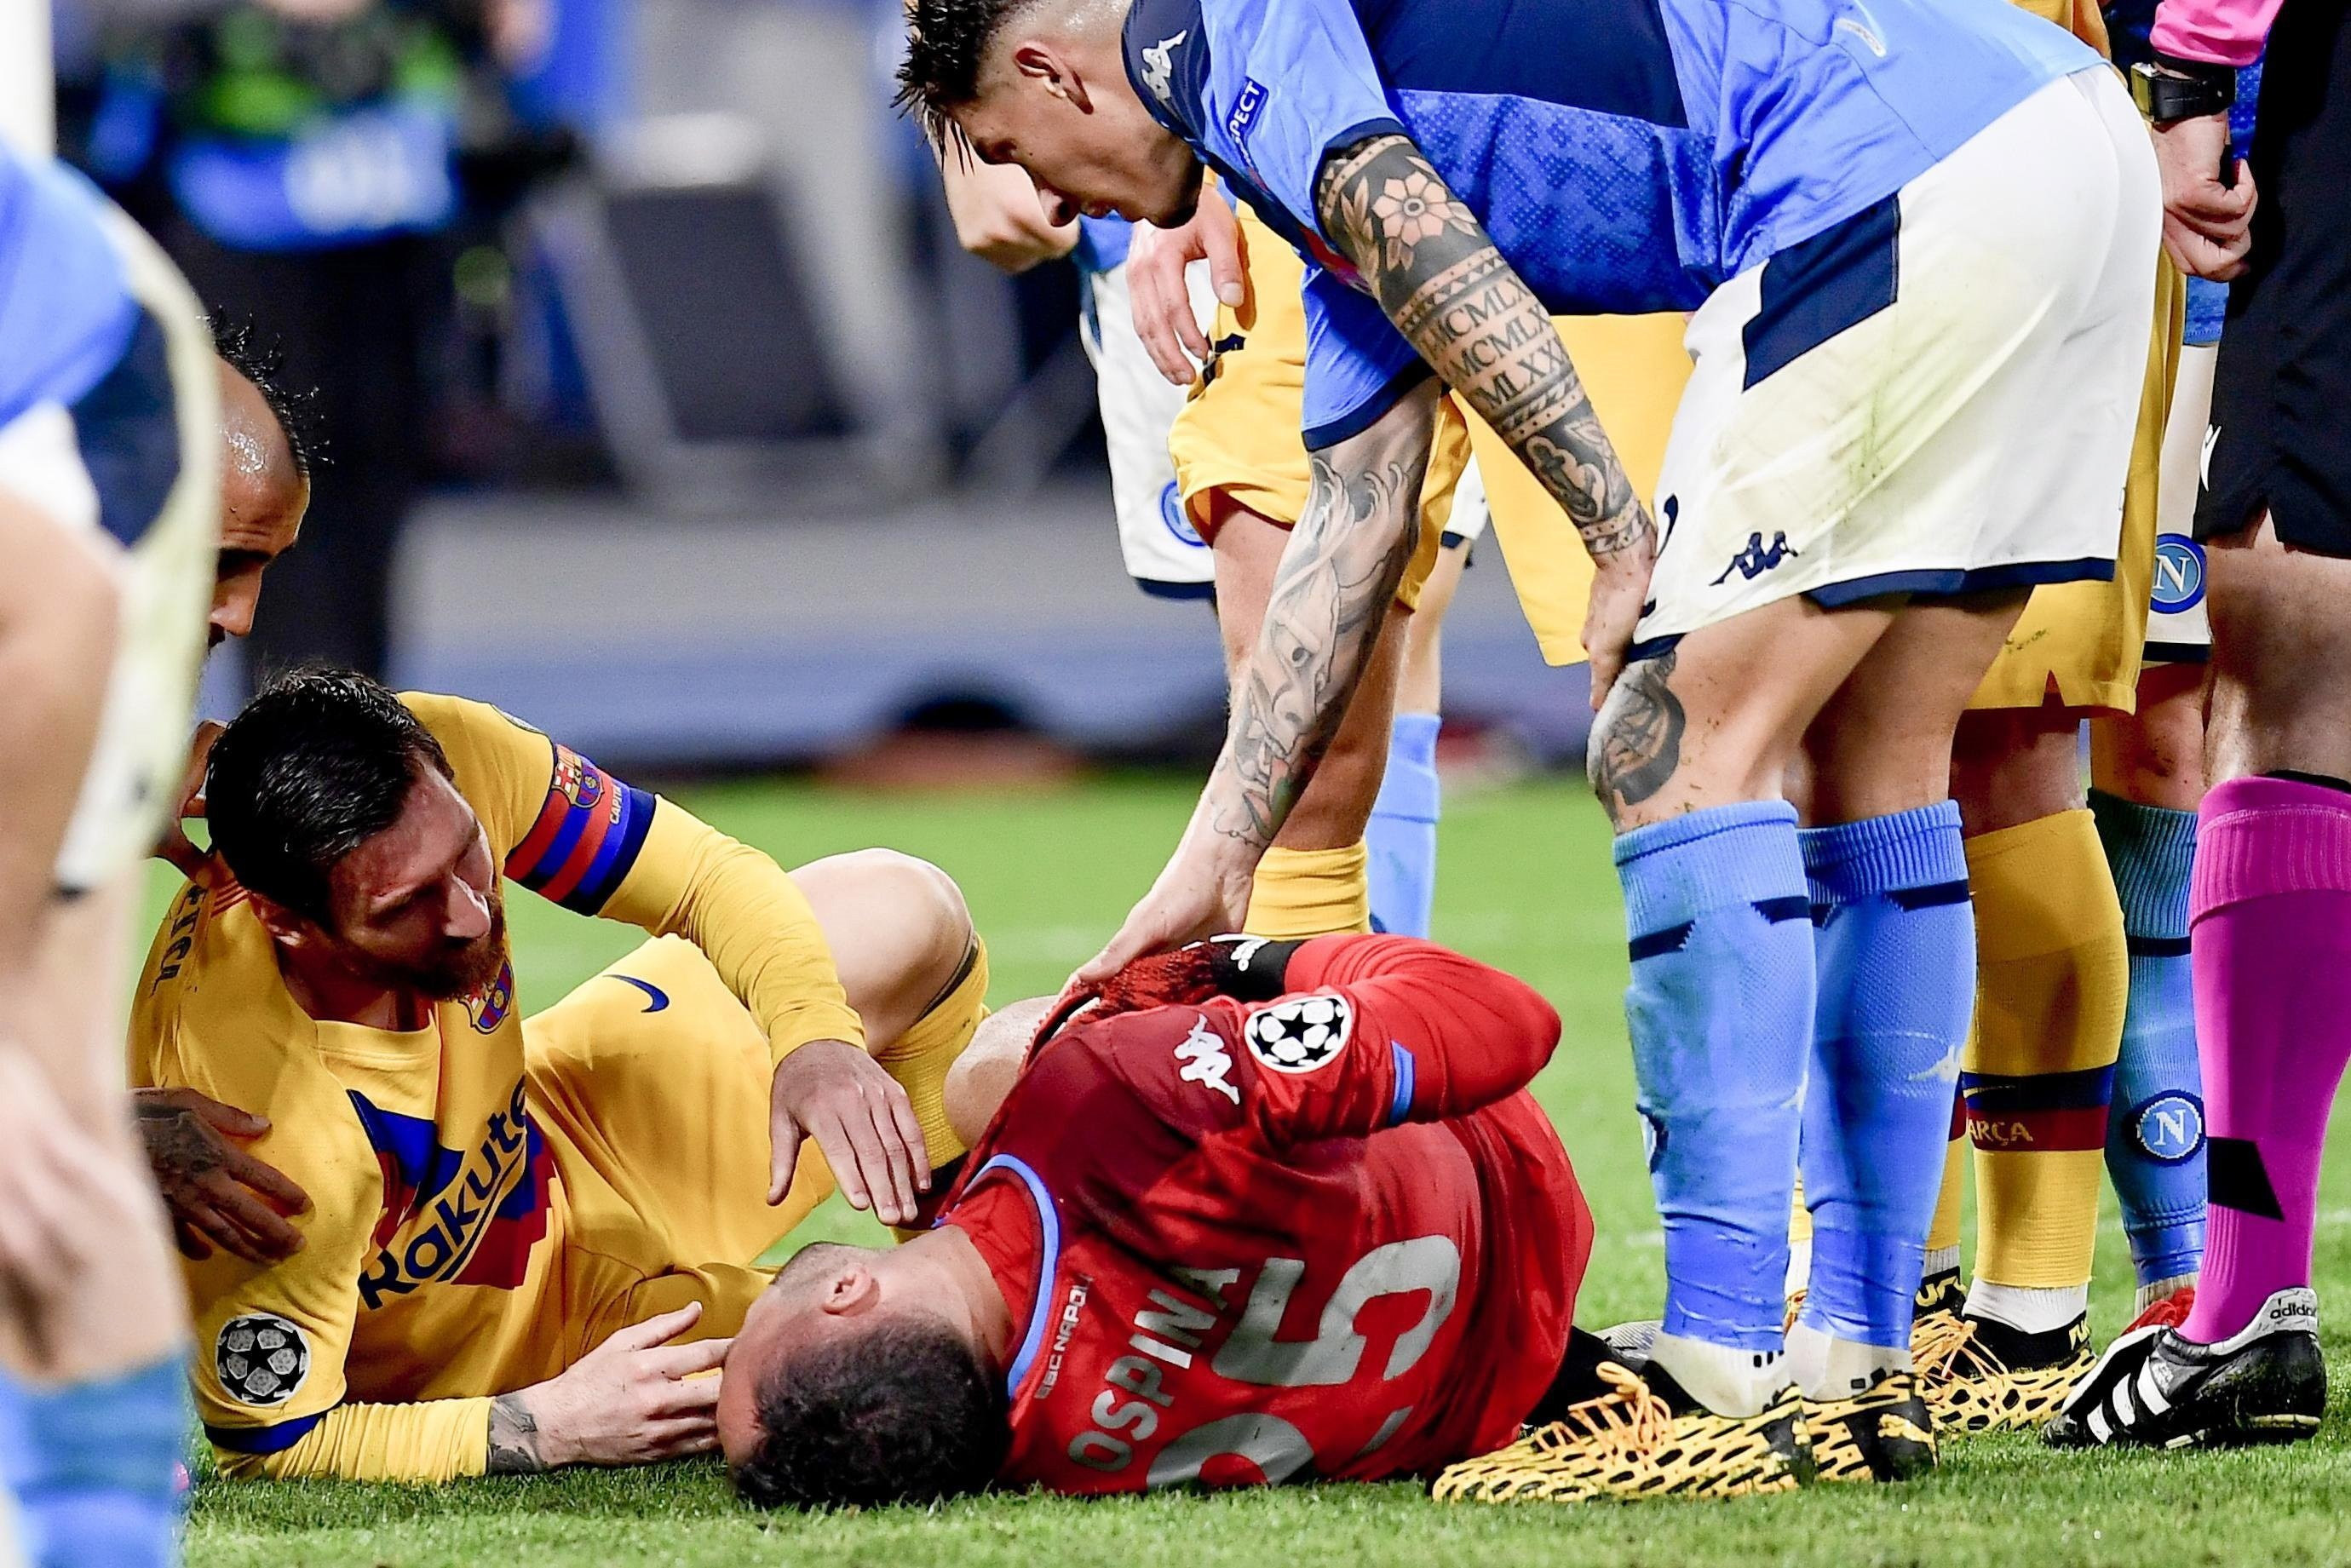 Messi, en el momento del choque contra Ospina | EFE